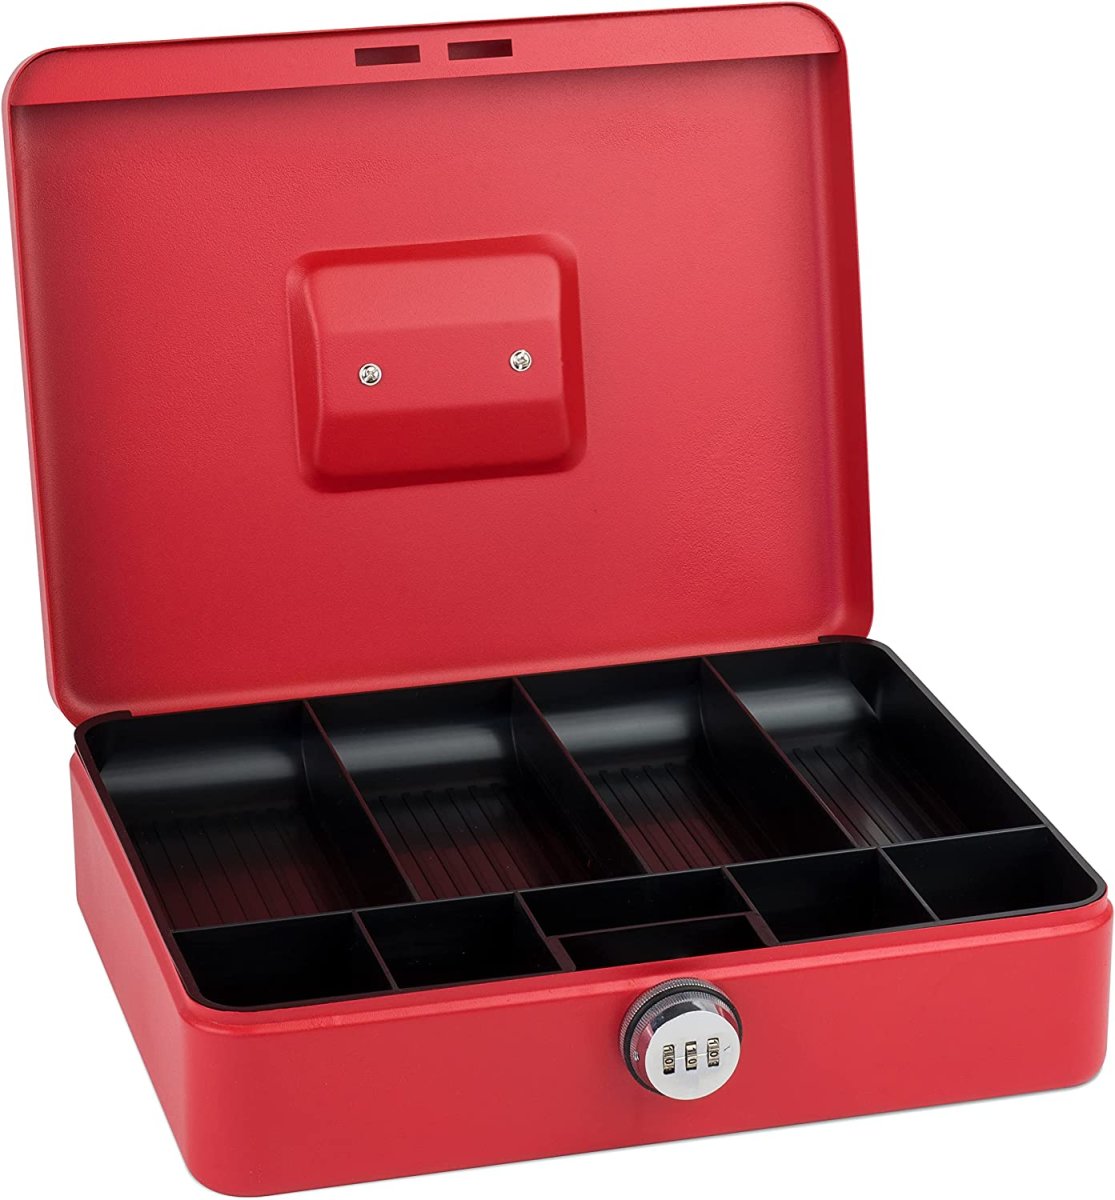 SAX Geldkassette XL 30 x 24 x 9 rot mit Zahlenschloss 0-824-13